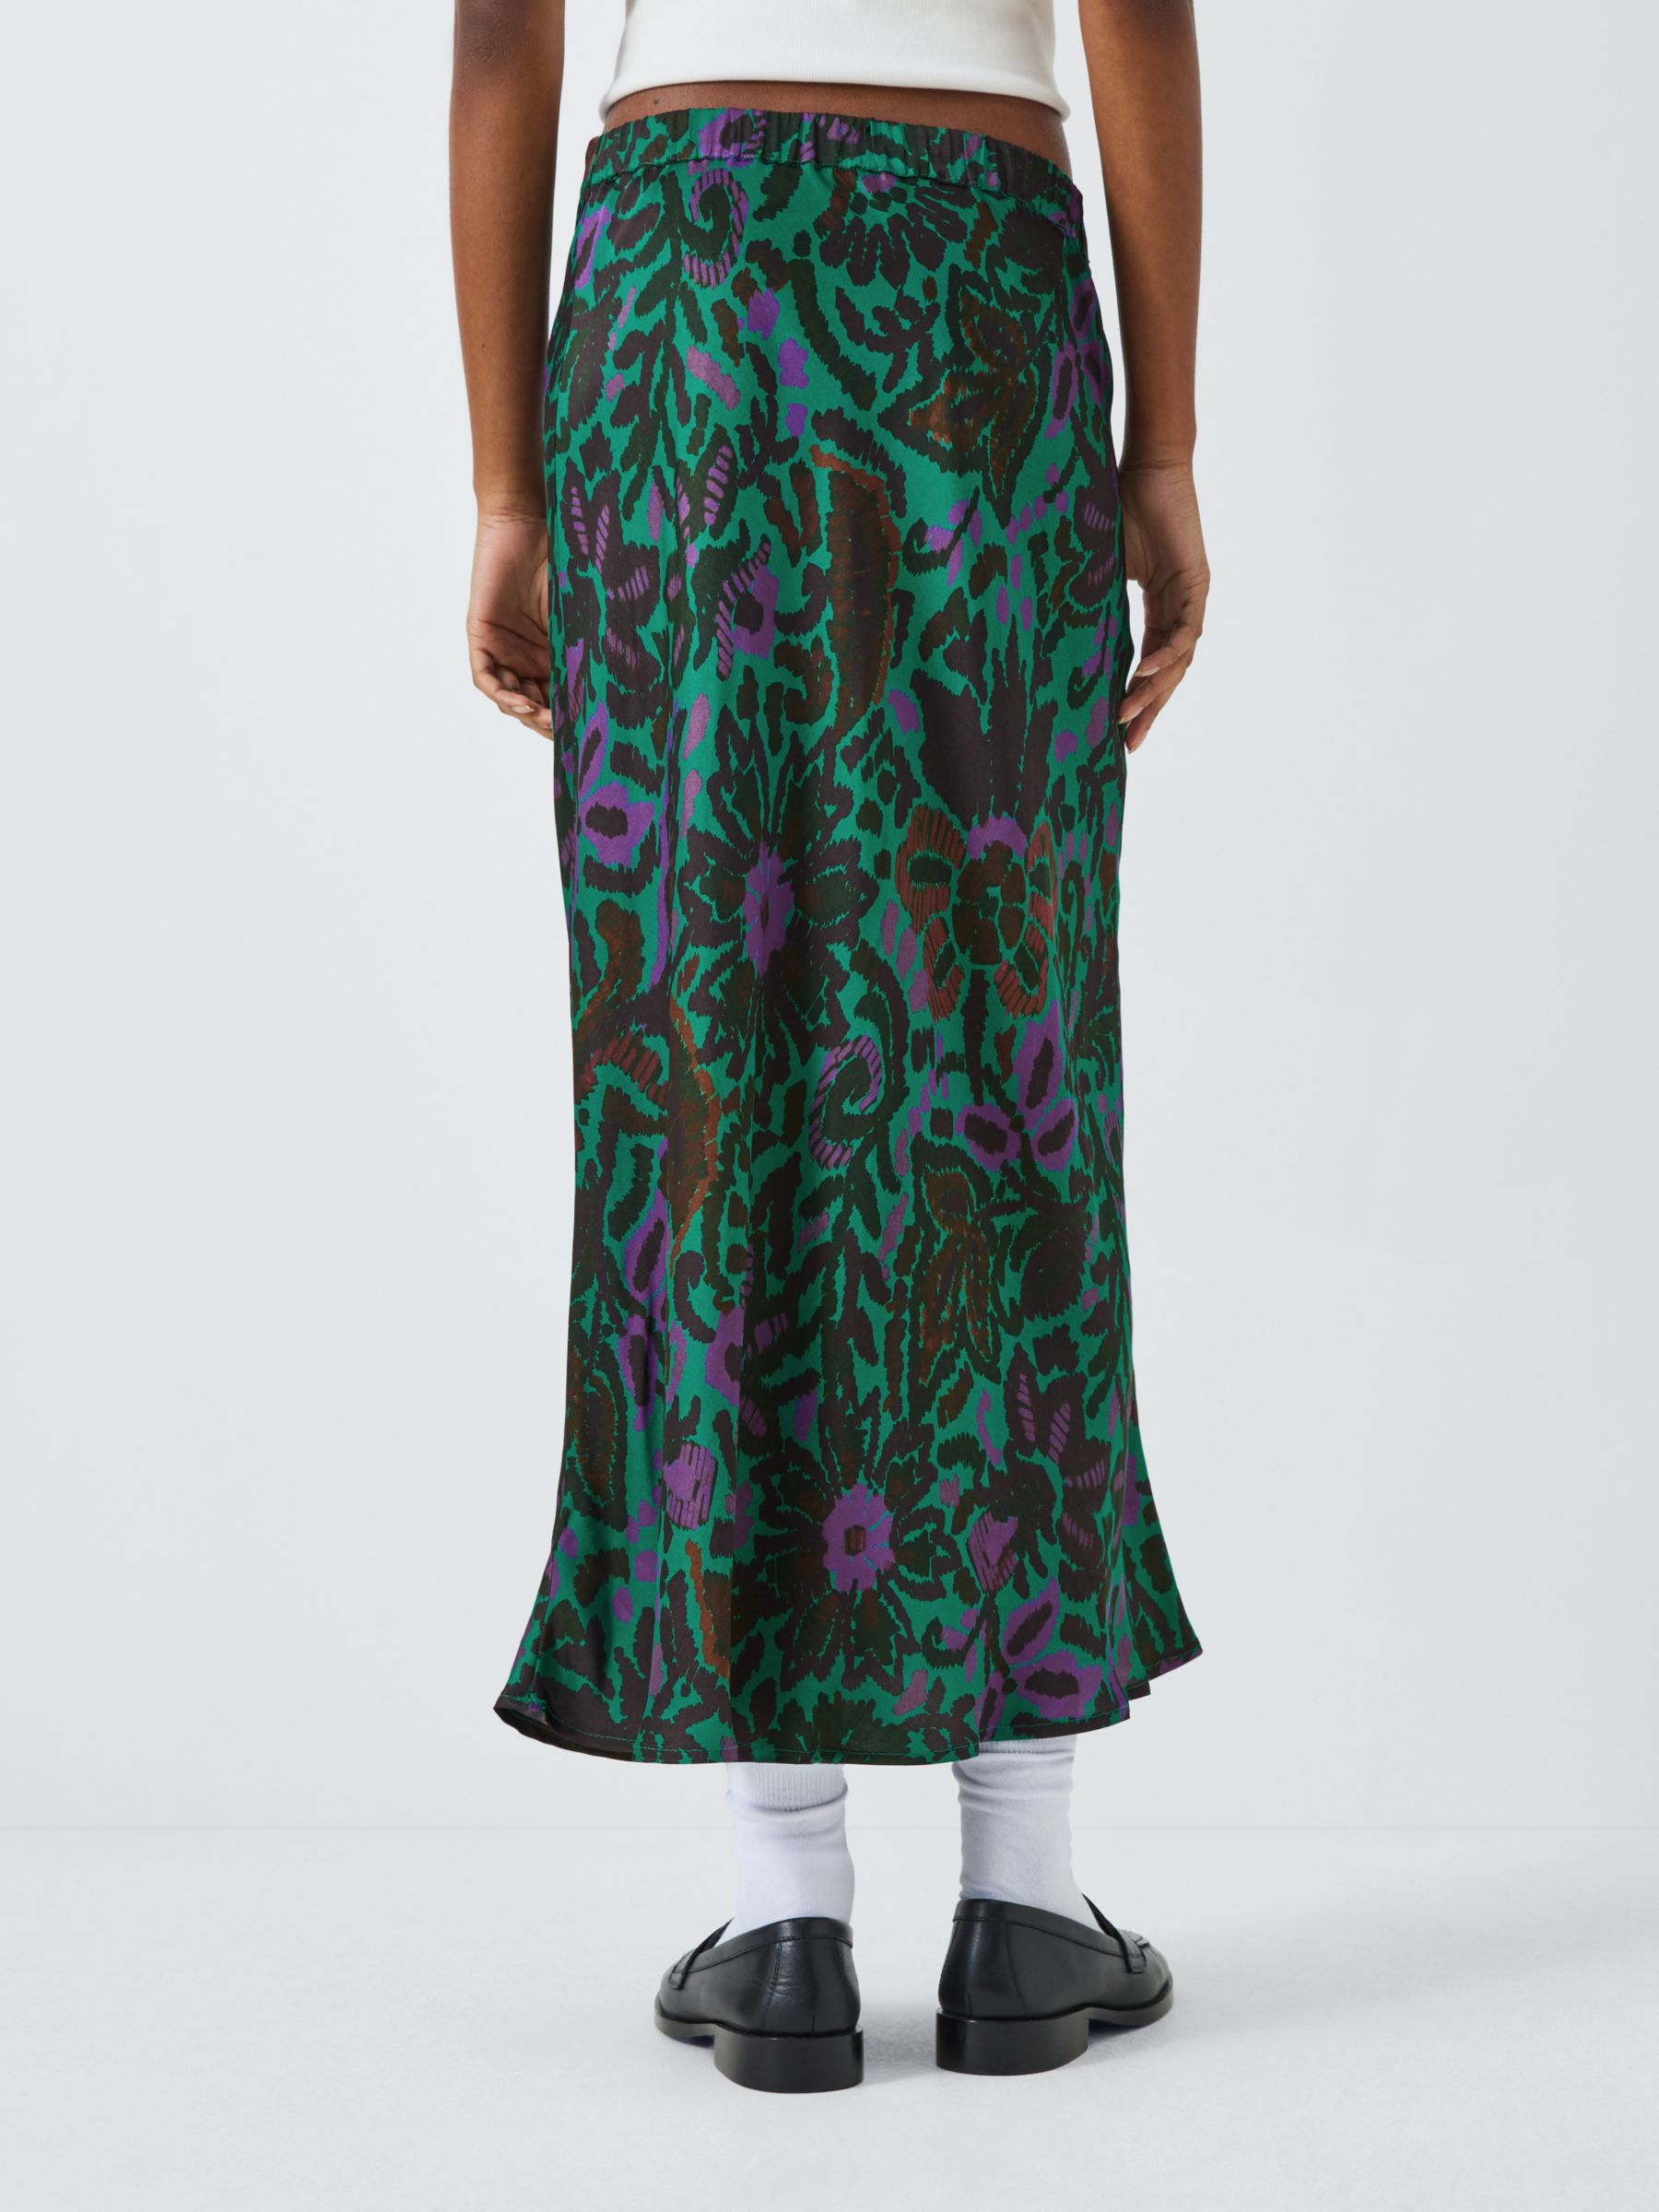 Velvet by Graham & Spencer Kaiya Abstract Print Midi Skirt, Green/Multi, M